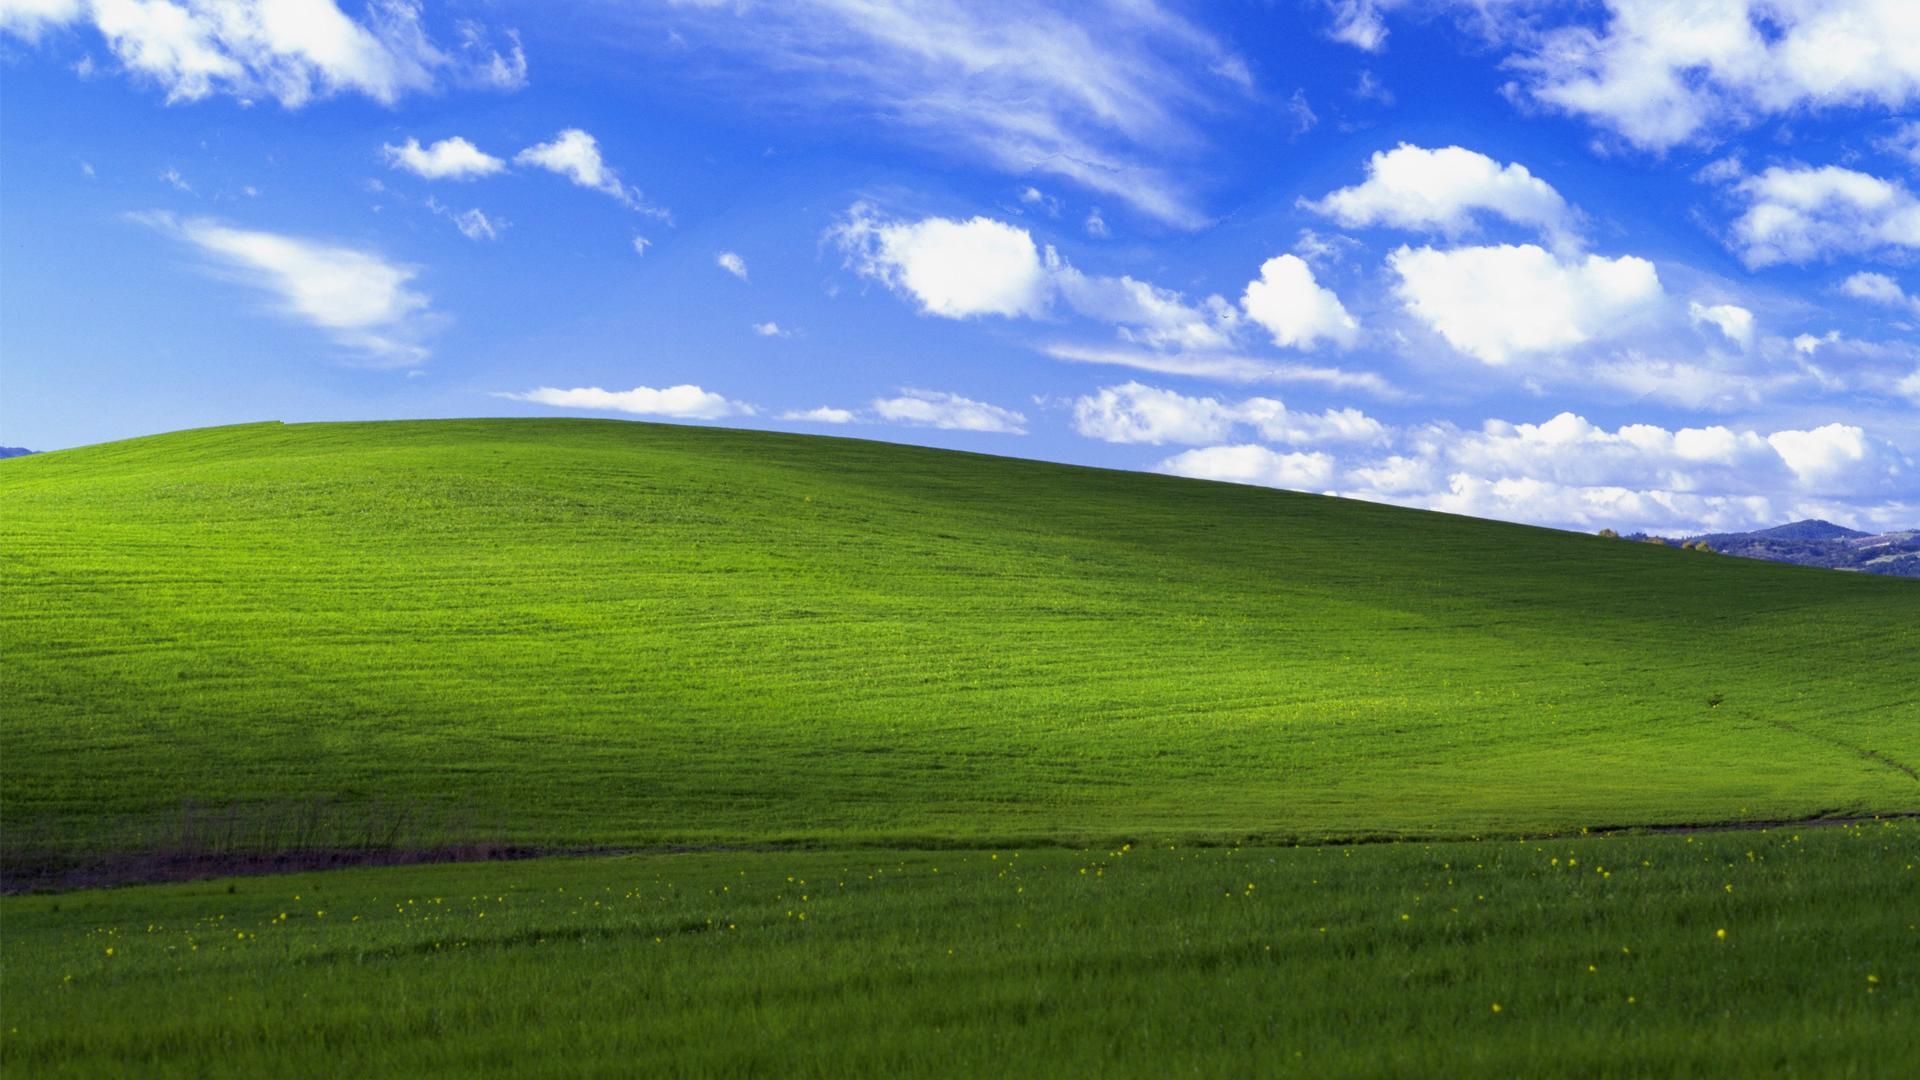 Quay trở lại ký ức tuổi học trò với những bức tranh nền tuyệt đẹp của Windows XP. Sử dụng những hình nền này để trang trí màn hình máy tính của bạn và đem lại niềm vui nhớ lại quá khứ.